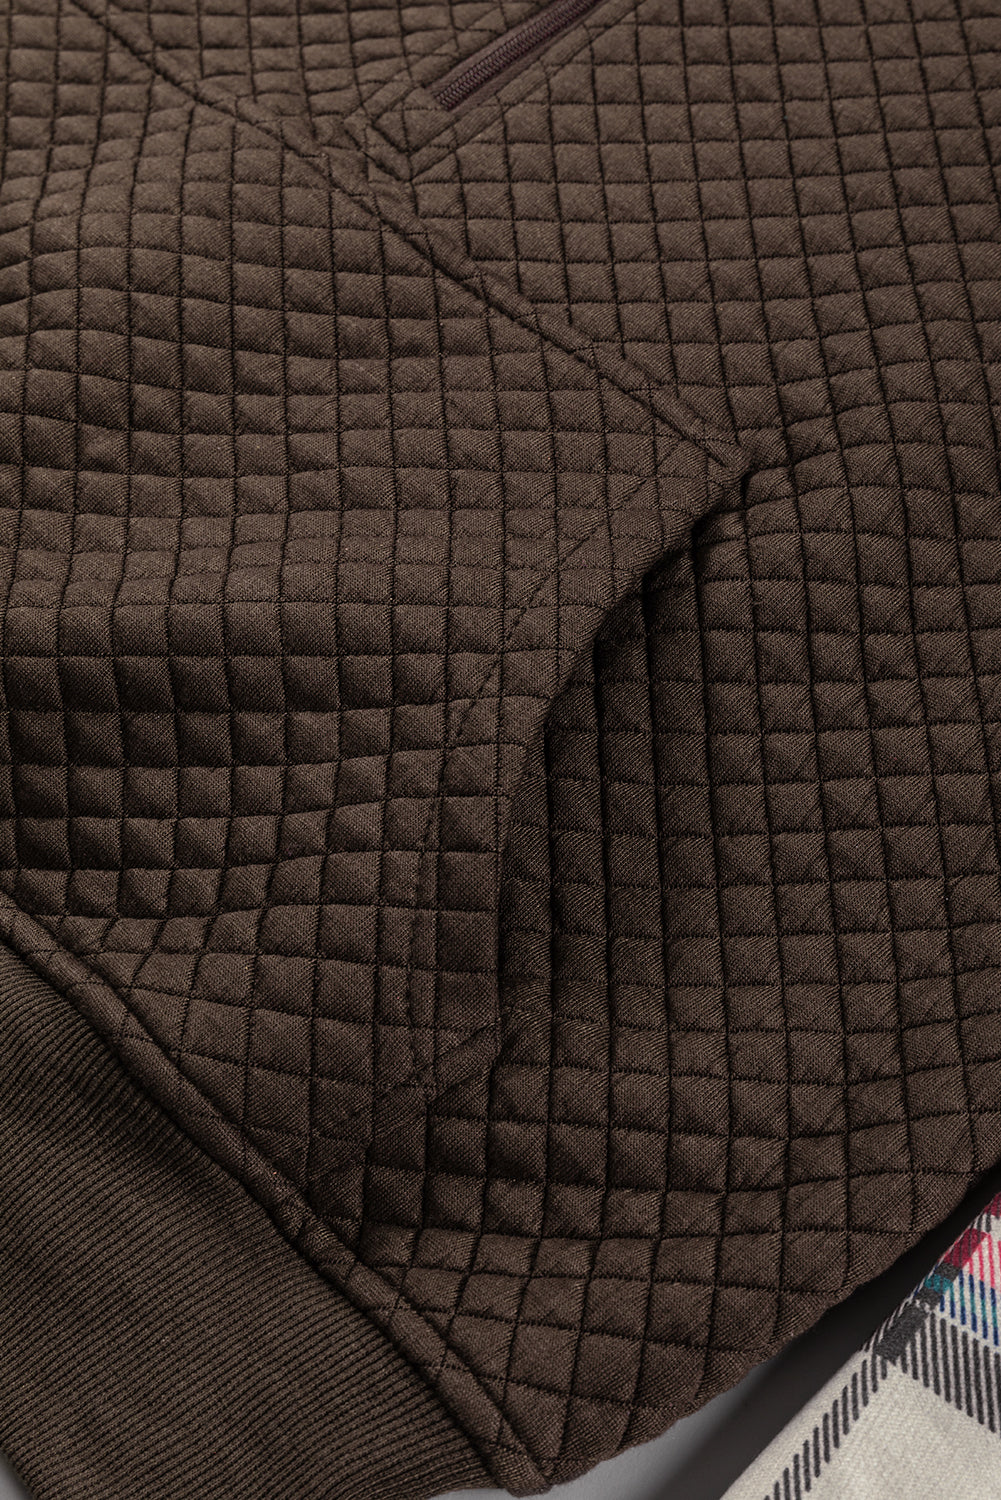 Kaki potiskana pulover s karirastimi rokavi in ​​ovratnikom s teksturo